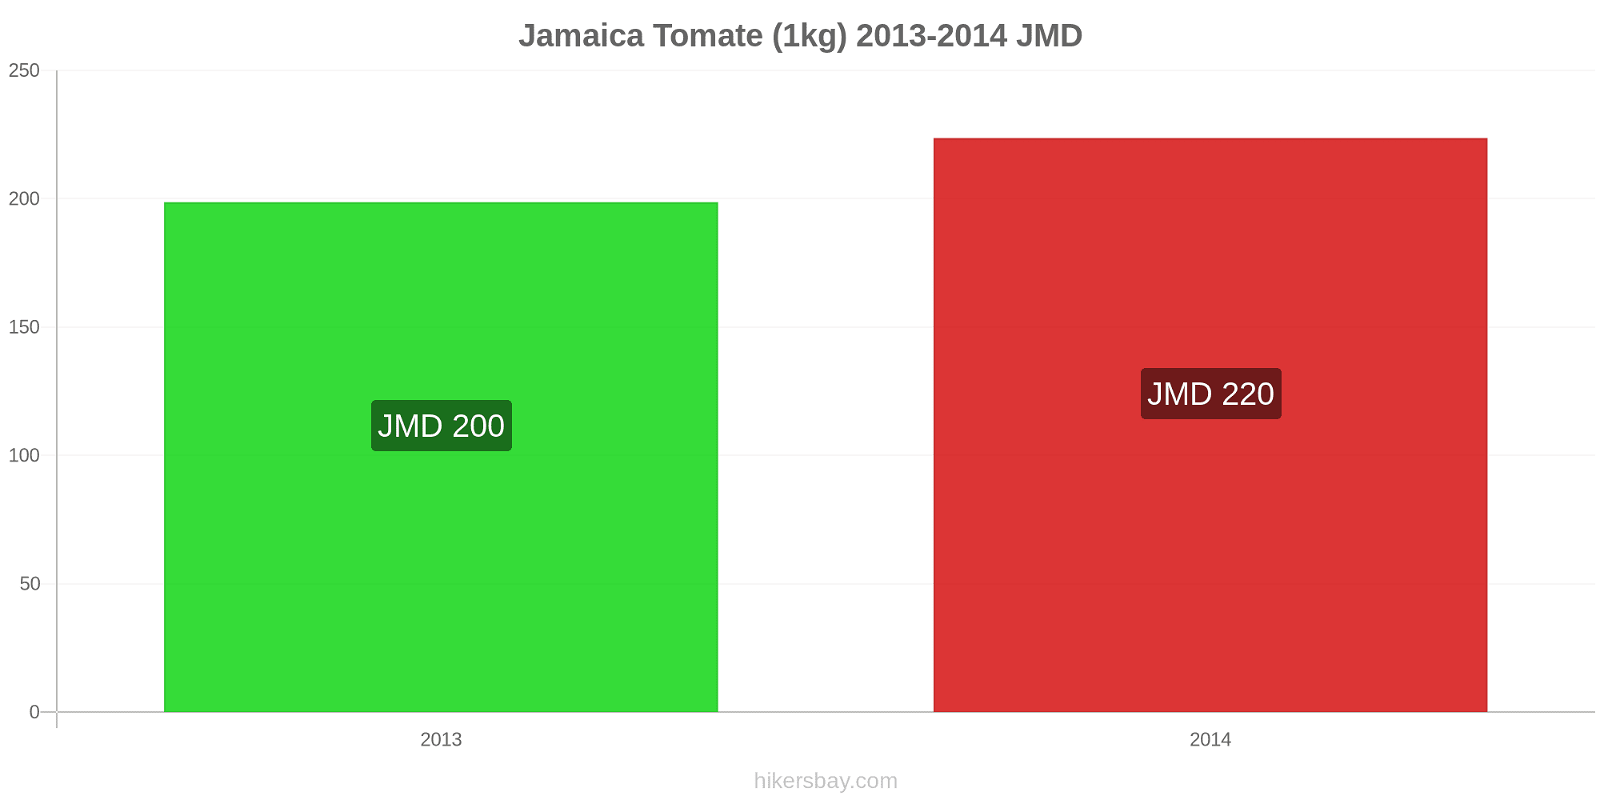 Jamaica variação de preço Tomate (1kg) hikersbay.com